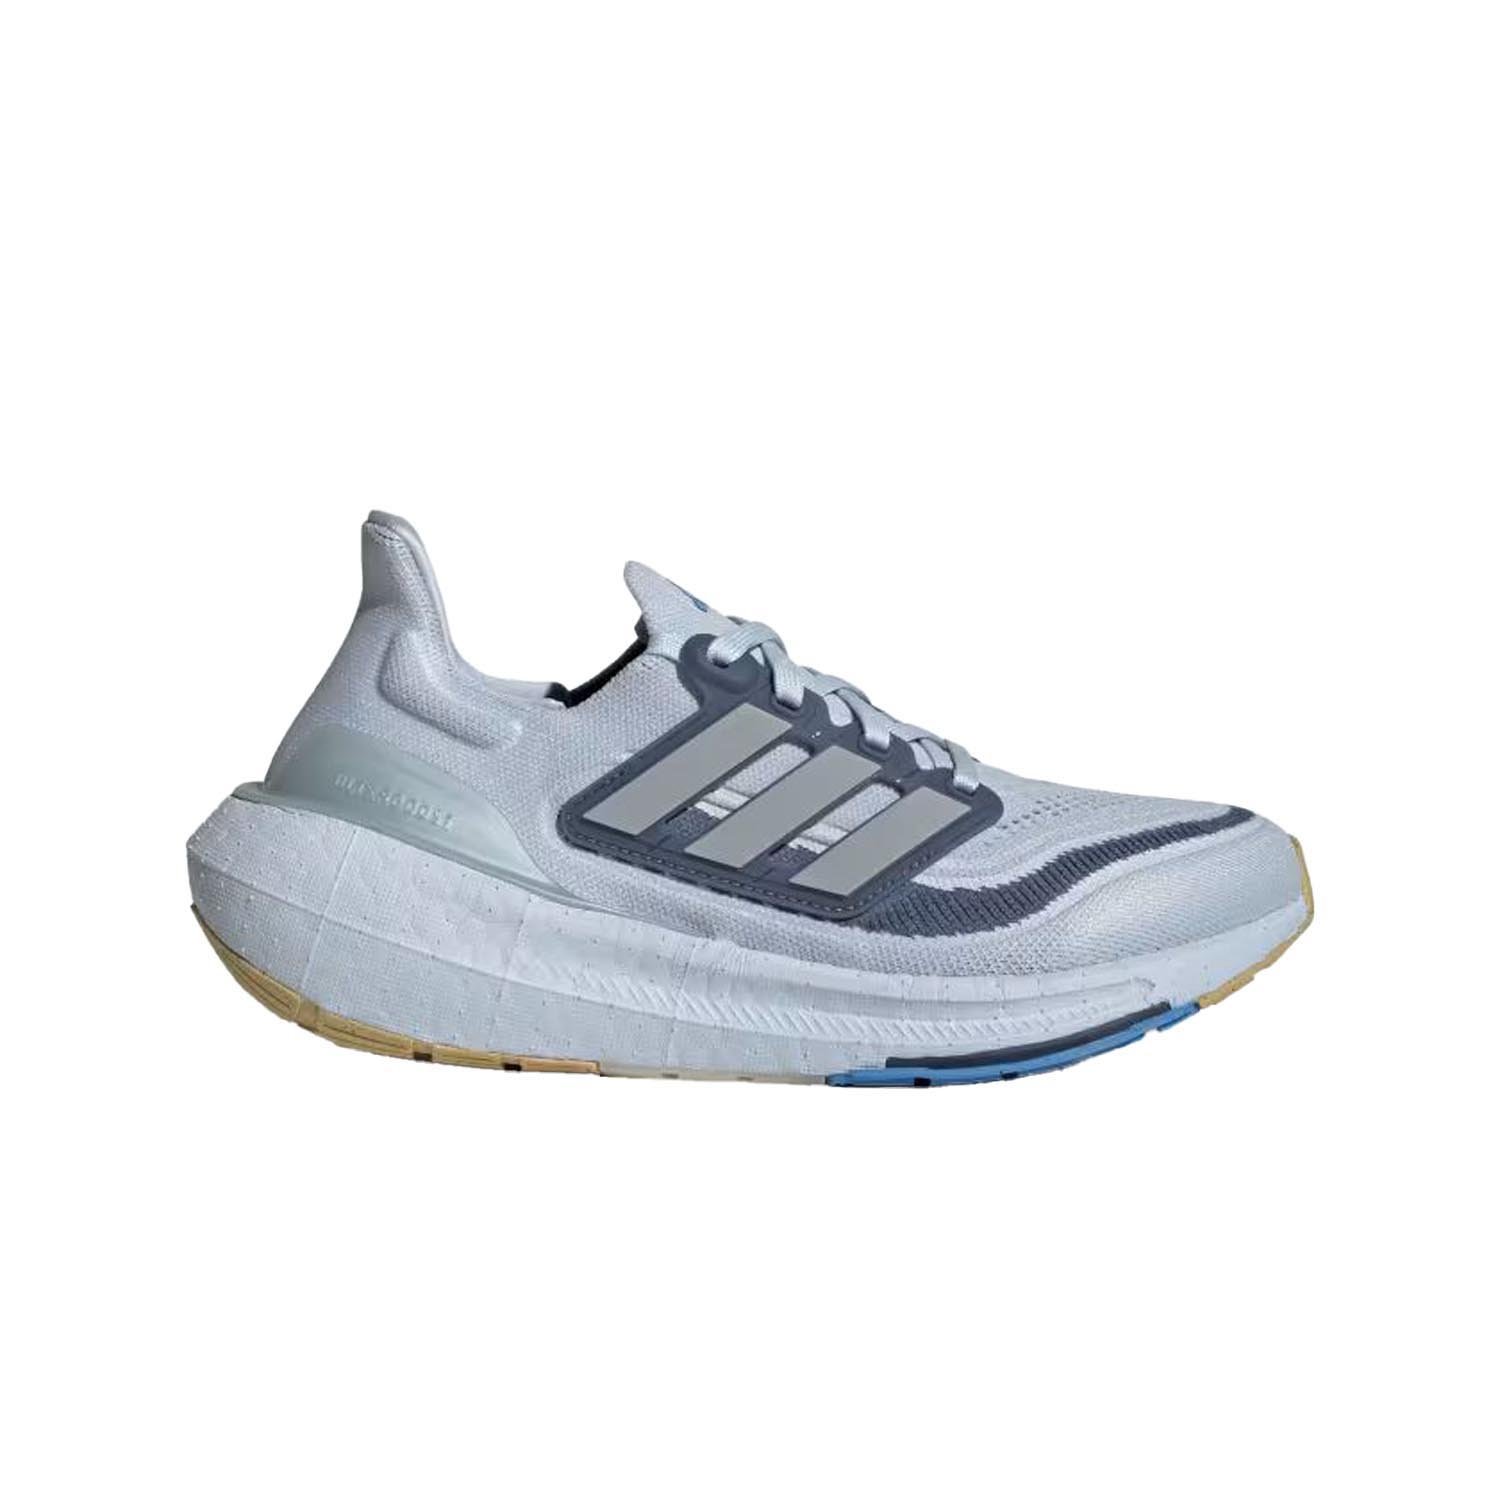 Adidas Ultraboost Light Kadın Yol Koşu Ayakkabısı - Mavi - 1